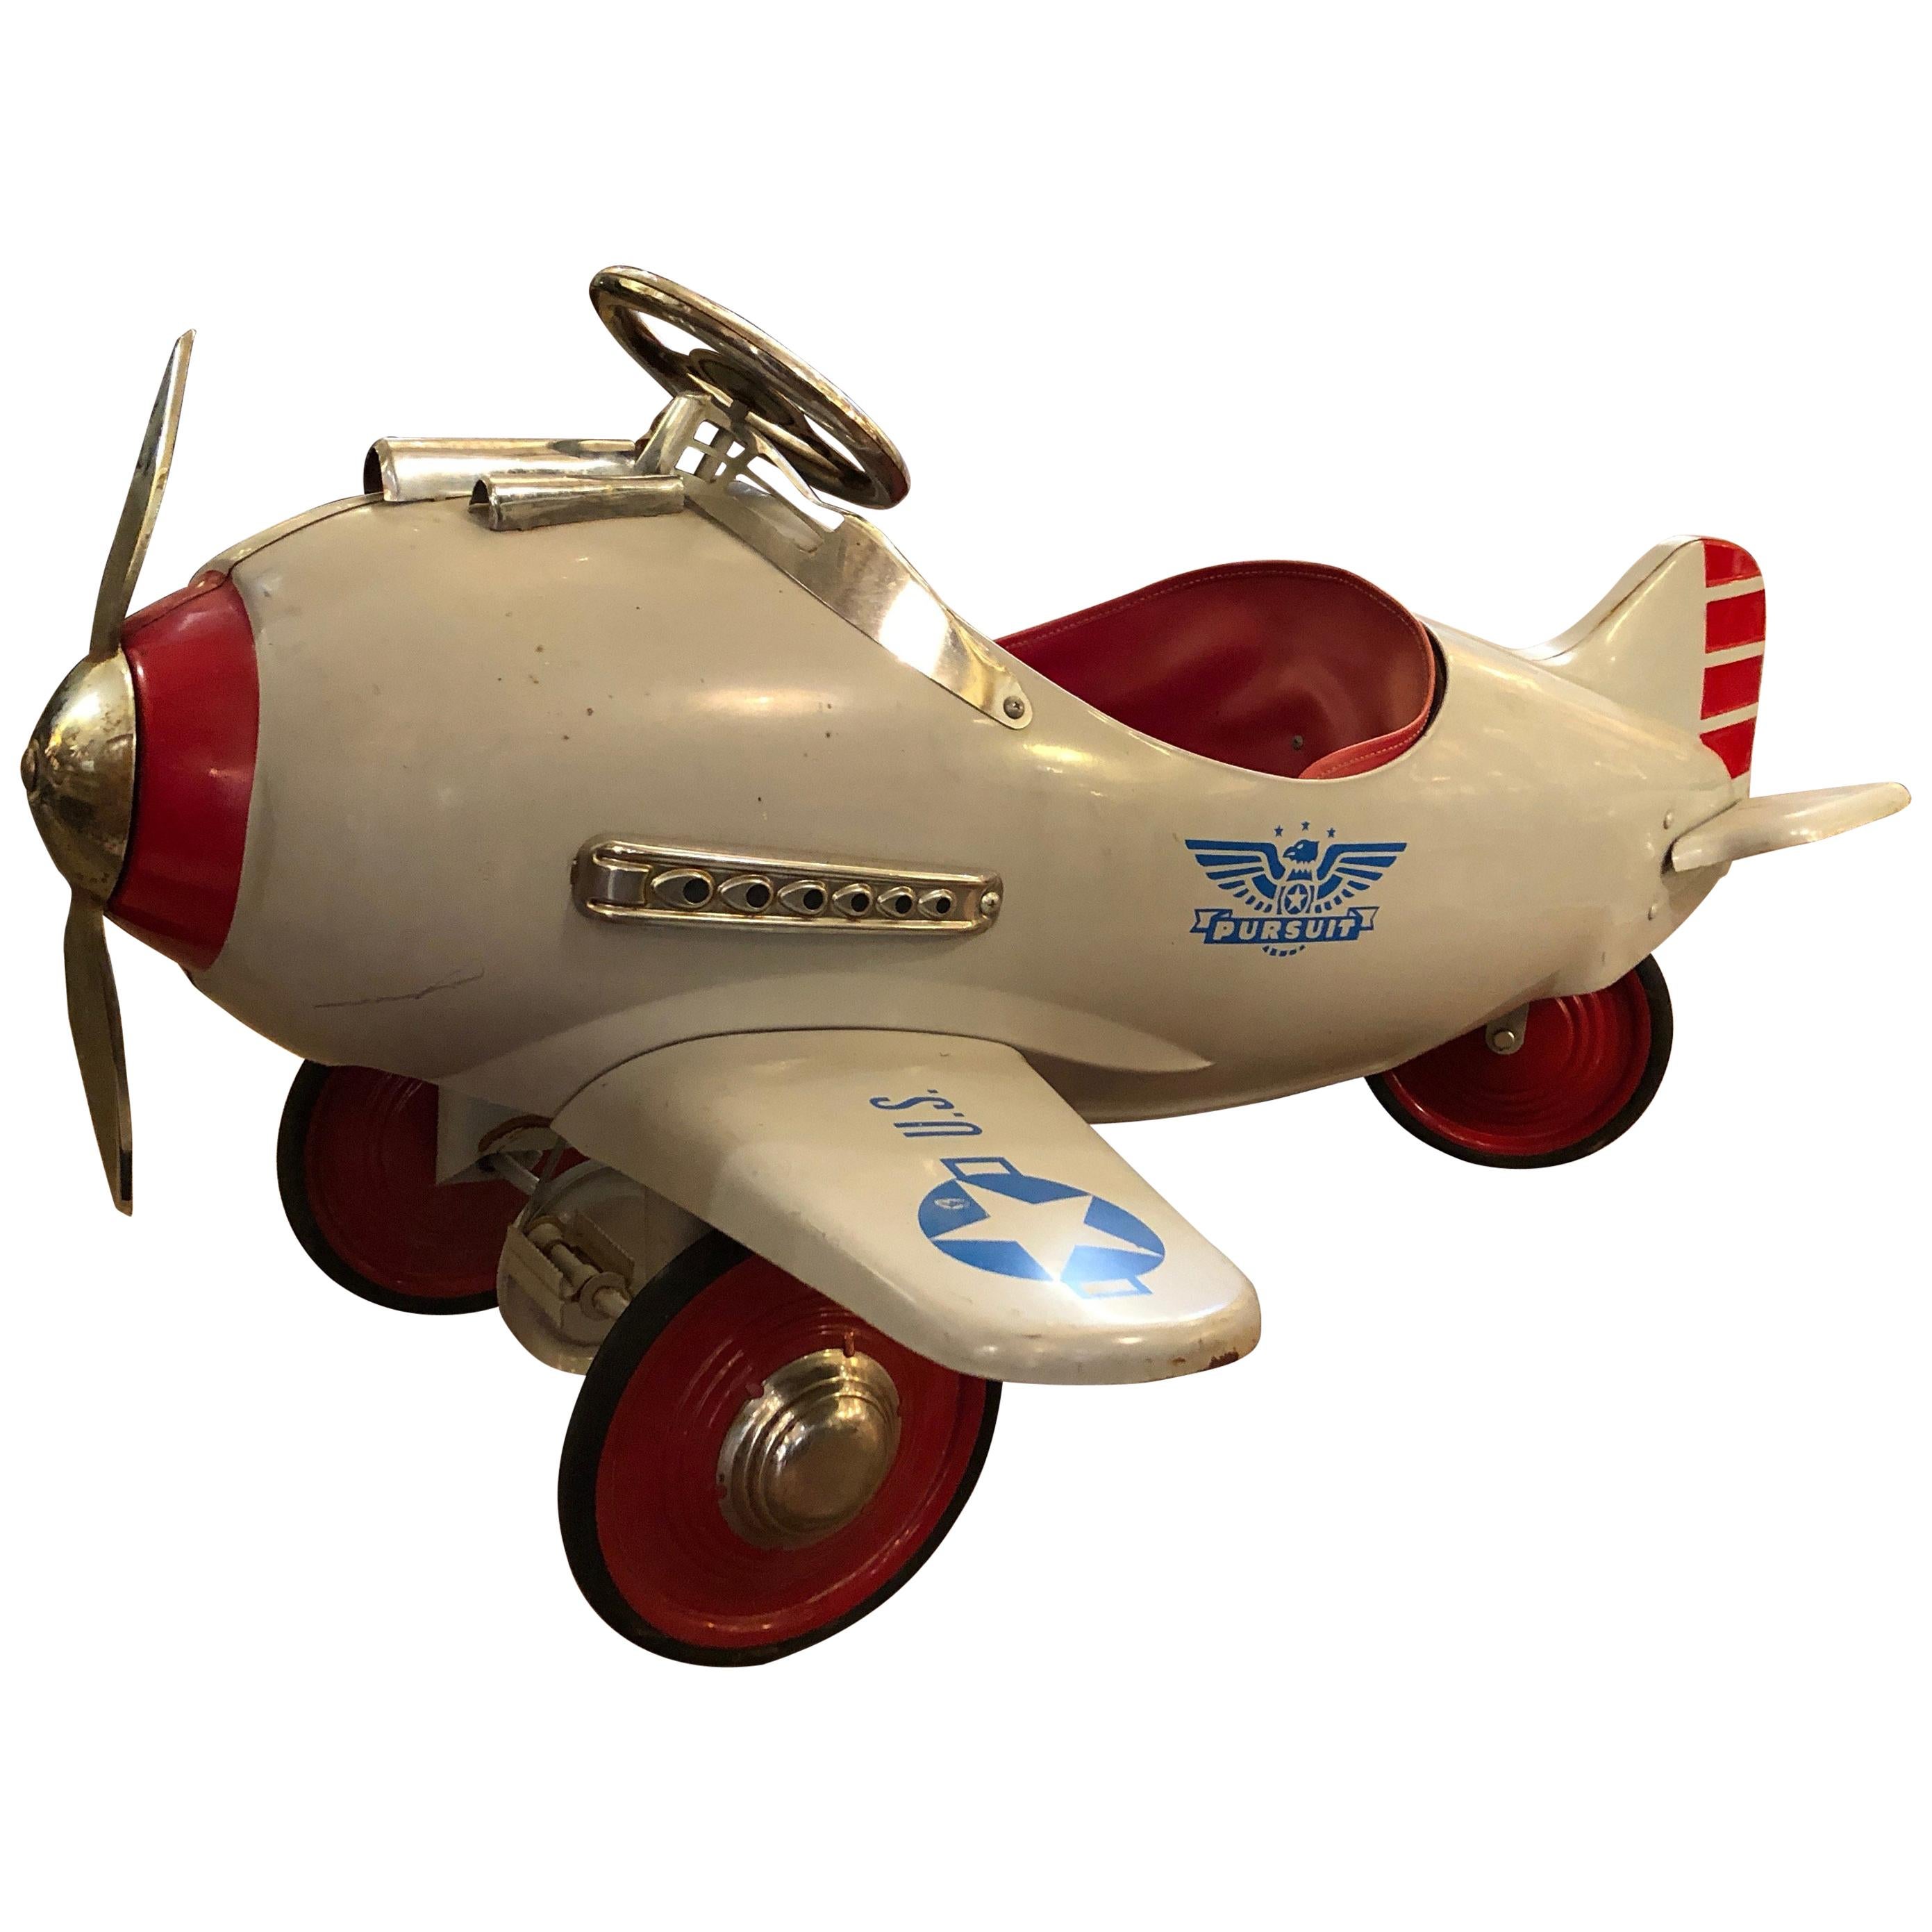 Fantastic Vintage Pursuit Children's Toy Pedal Airplane Car  